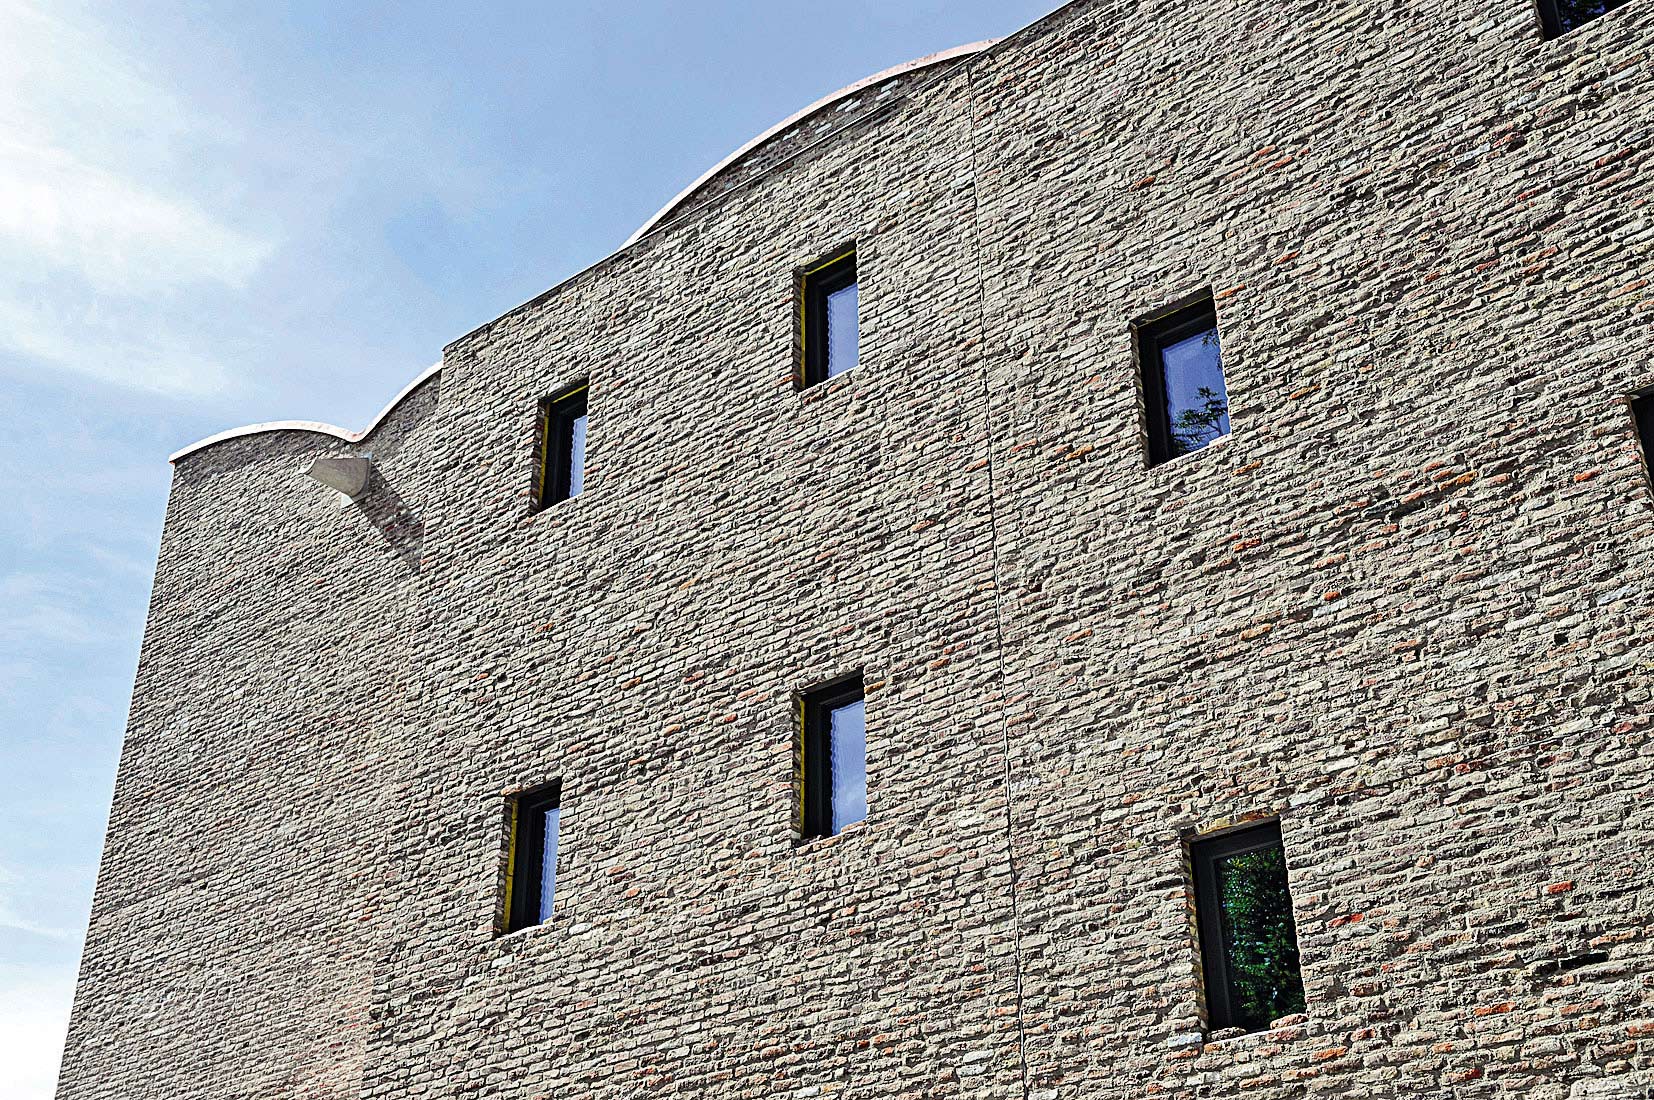 Fasáda je archaicky jednoduchá s malými okennými otvormi, ktoré vyhovujú vystaveným tlačovinám citlivým na svetlo. Vonkajšie steny s masívnym zateplením sa zároveň podieľajú na energetickej účinnosti budovy.